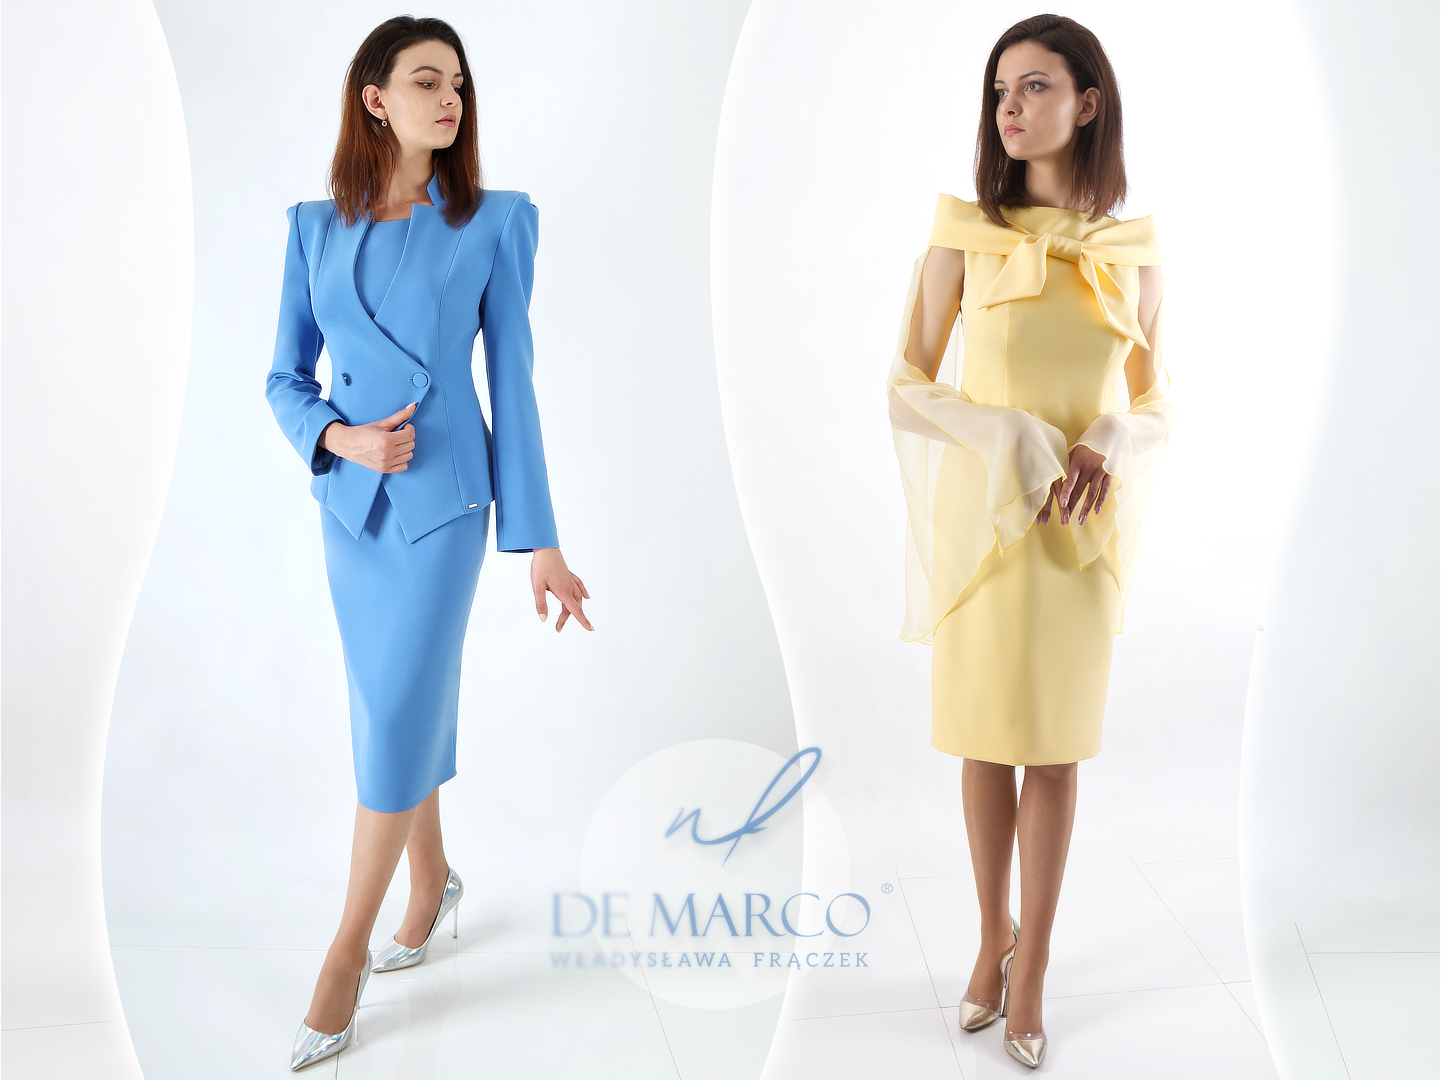 Modne kolory na lato niebieski i żółty w stylizacjach wizytowych i biznesowych dla kobiet